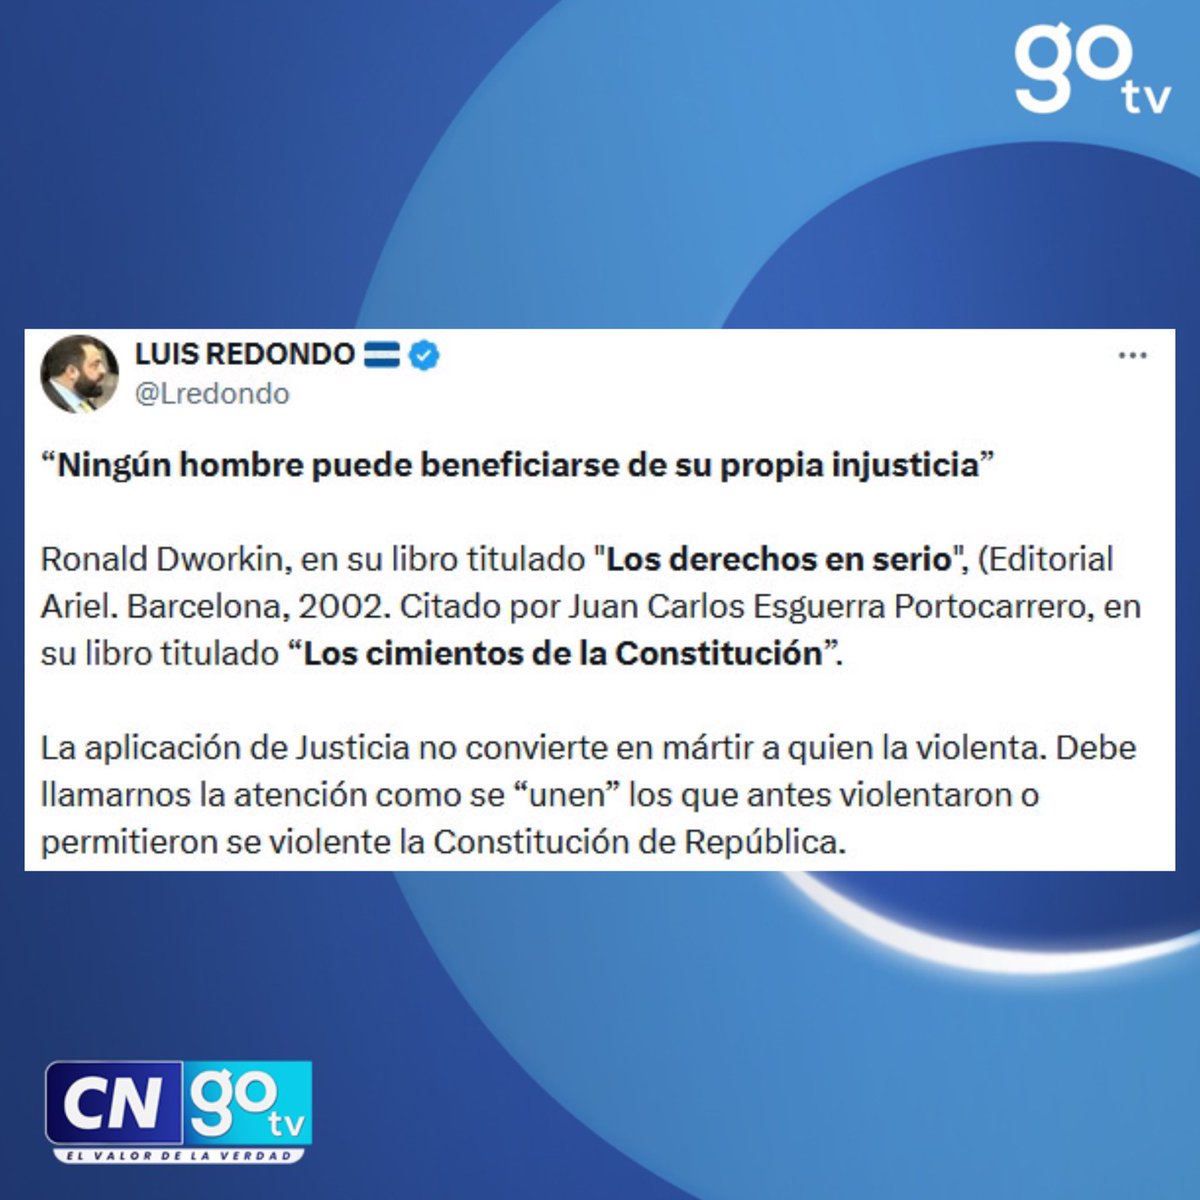 #CNGOTV 🔴 “La aplicación de Justicia no convierte en mártir a quien la violenta” expresa El presidente del Congreso Nacional, Luis Redondo. #LuisRedondo #Honduras #CongresoNacional